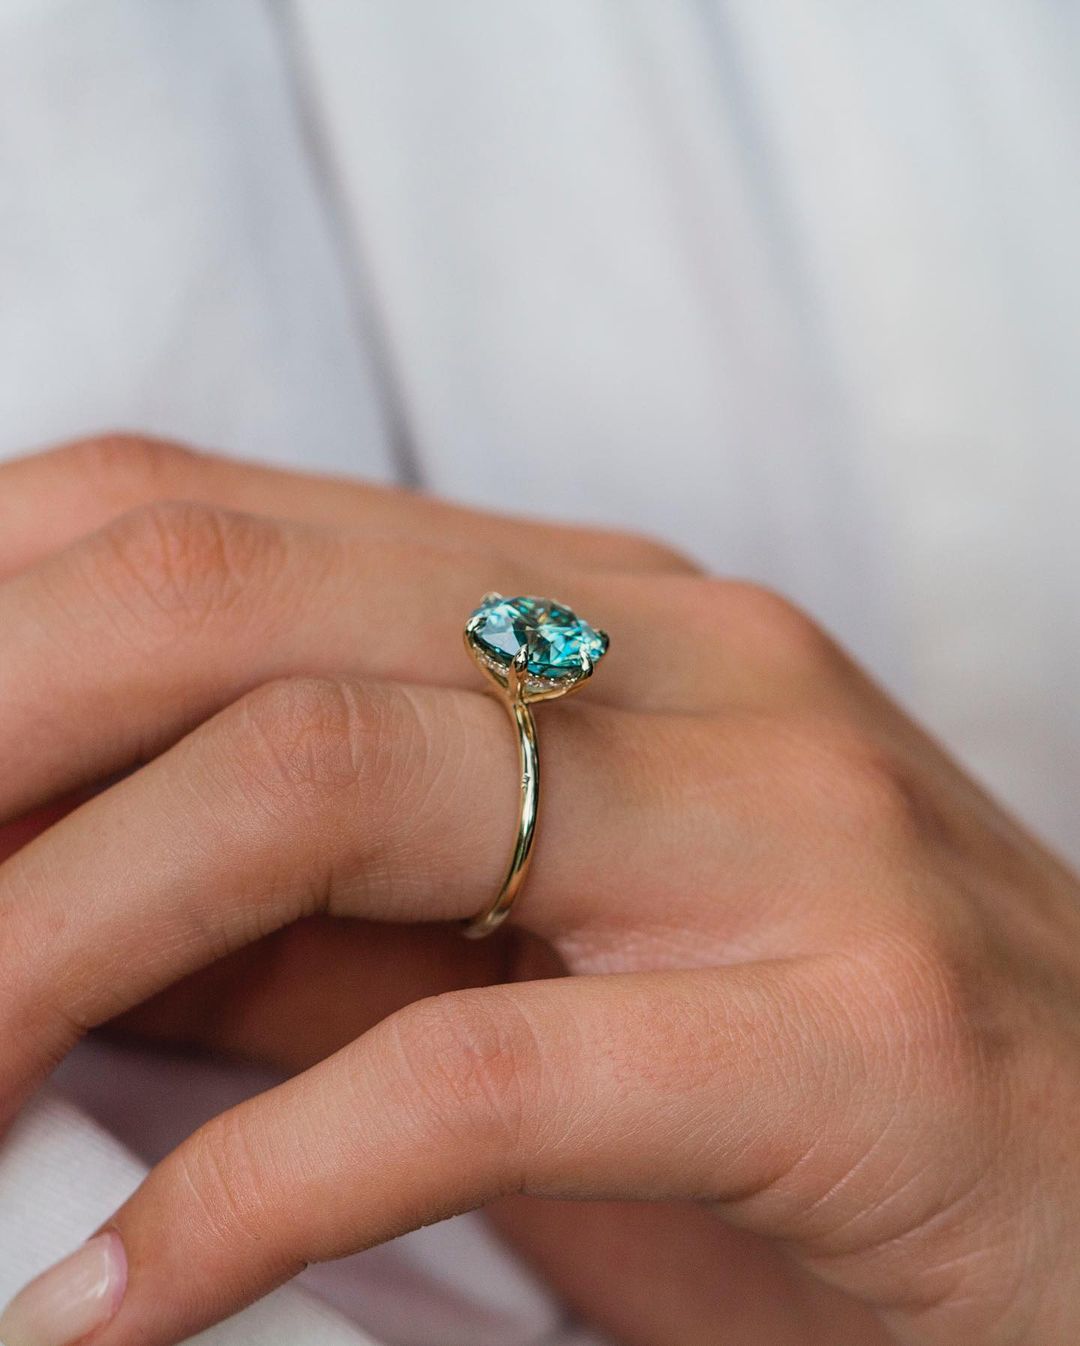 Fancy blue/green Moissanite Diamond Engagement Ring